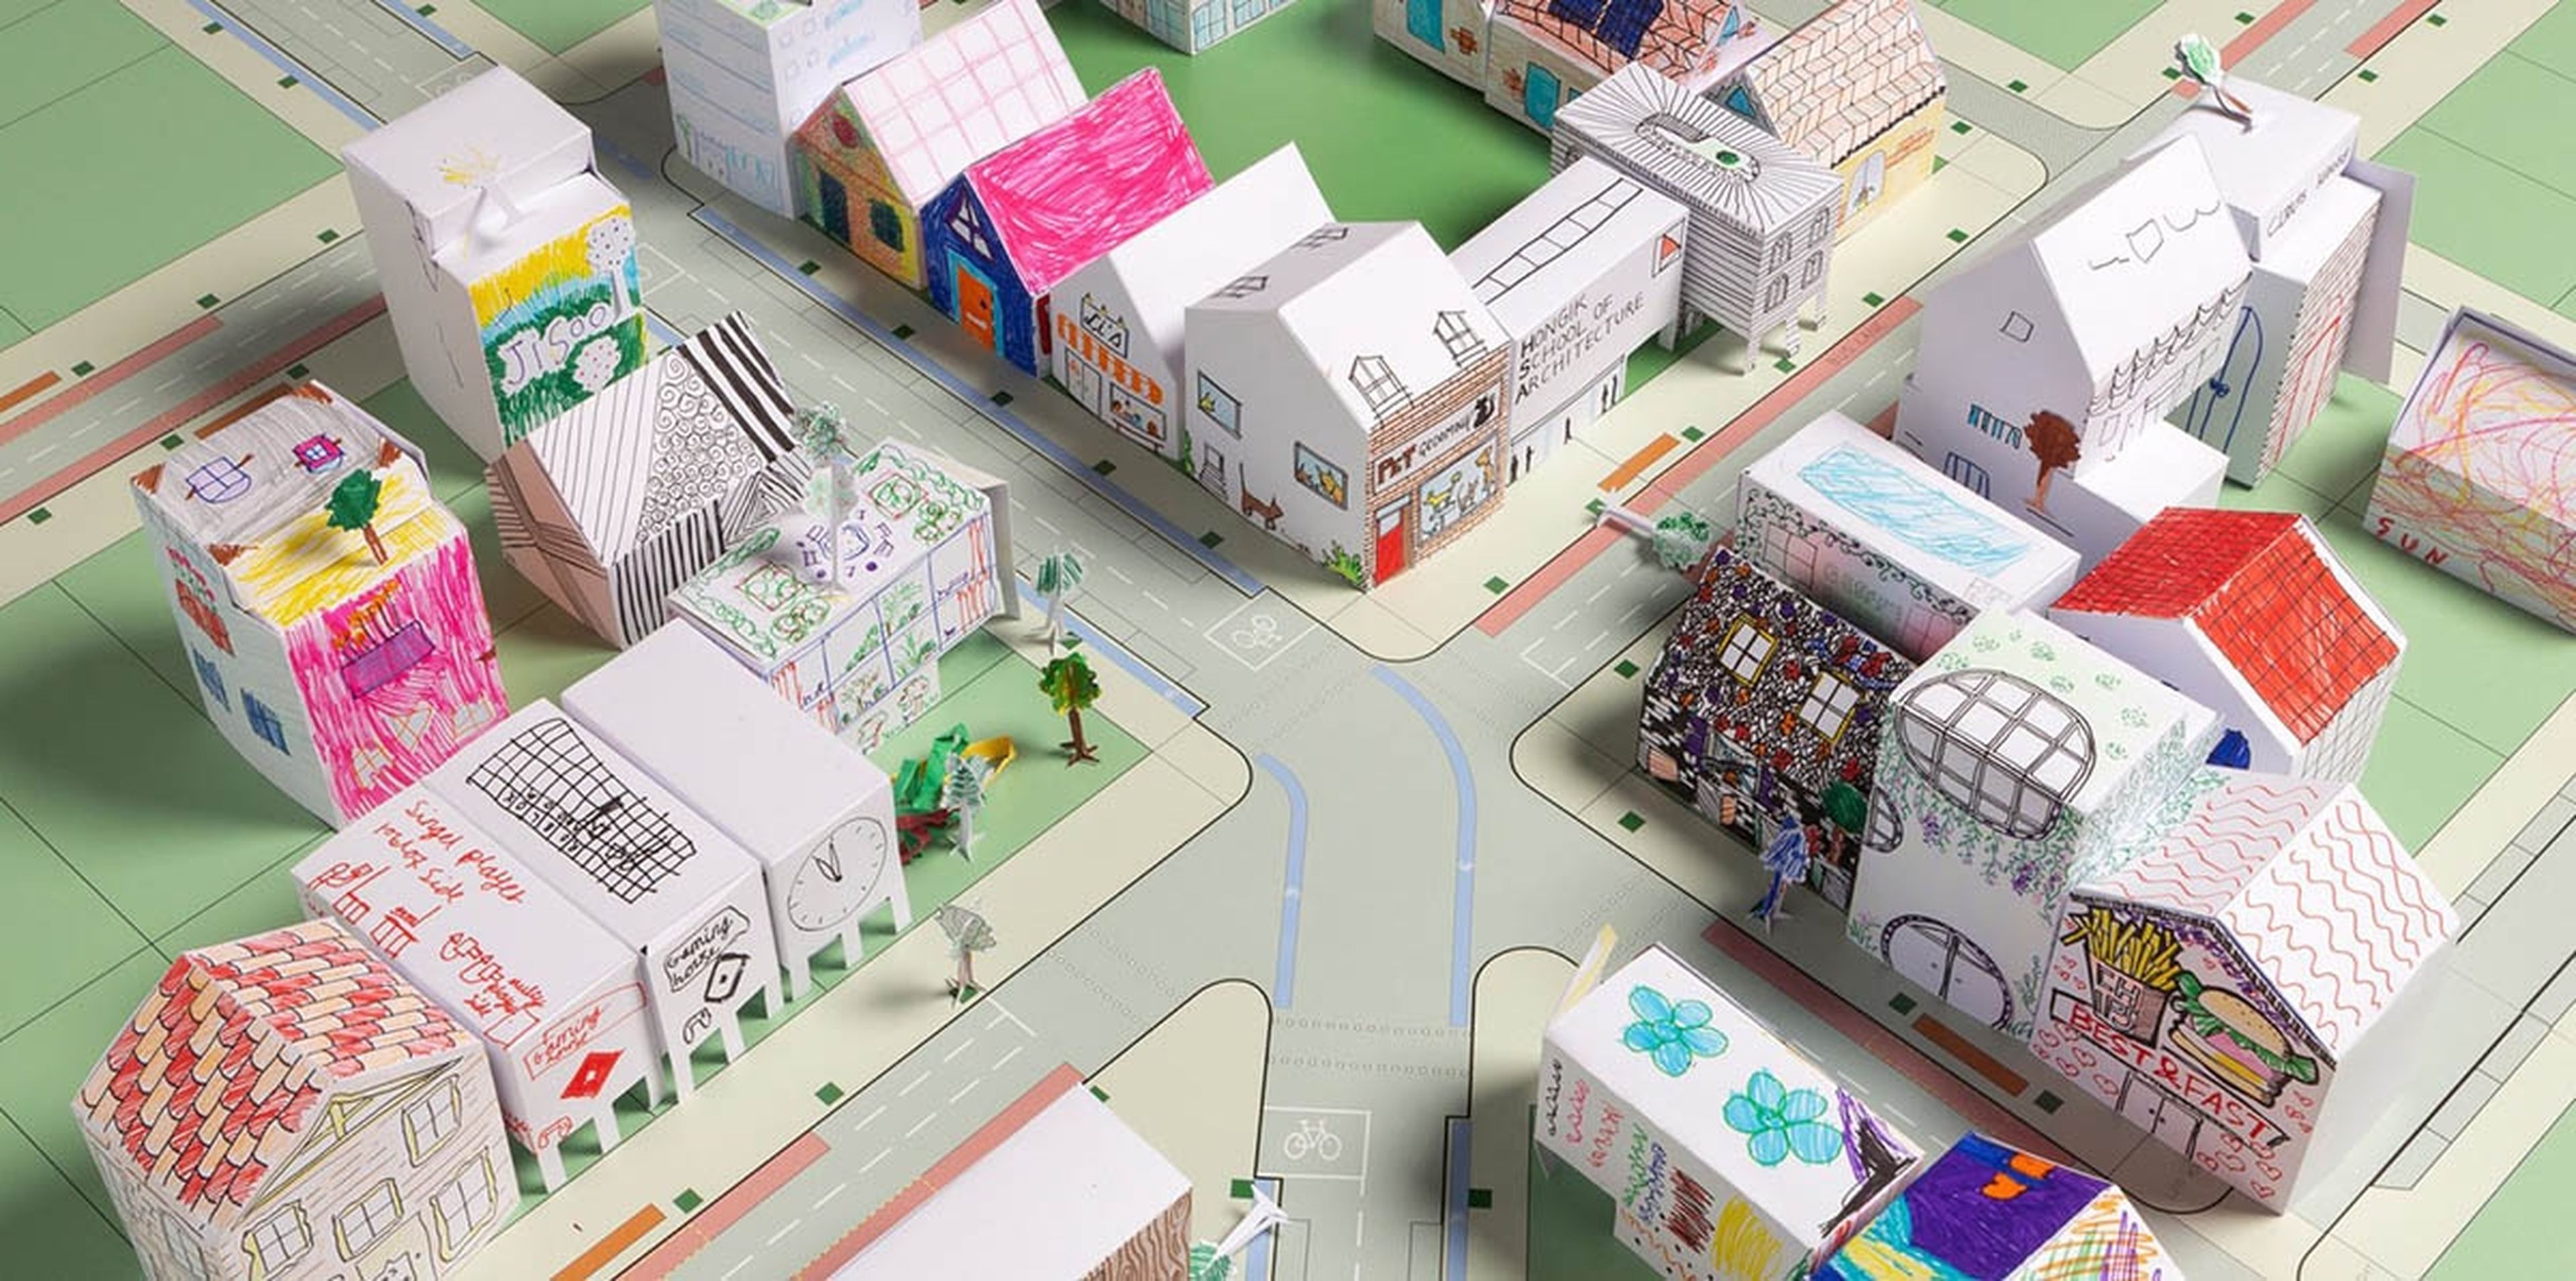 Una firma de arquitectos ofrece recortables para que los niños construyan su propia ciudad de papel